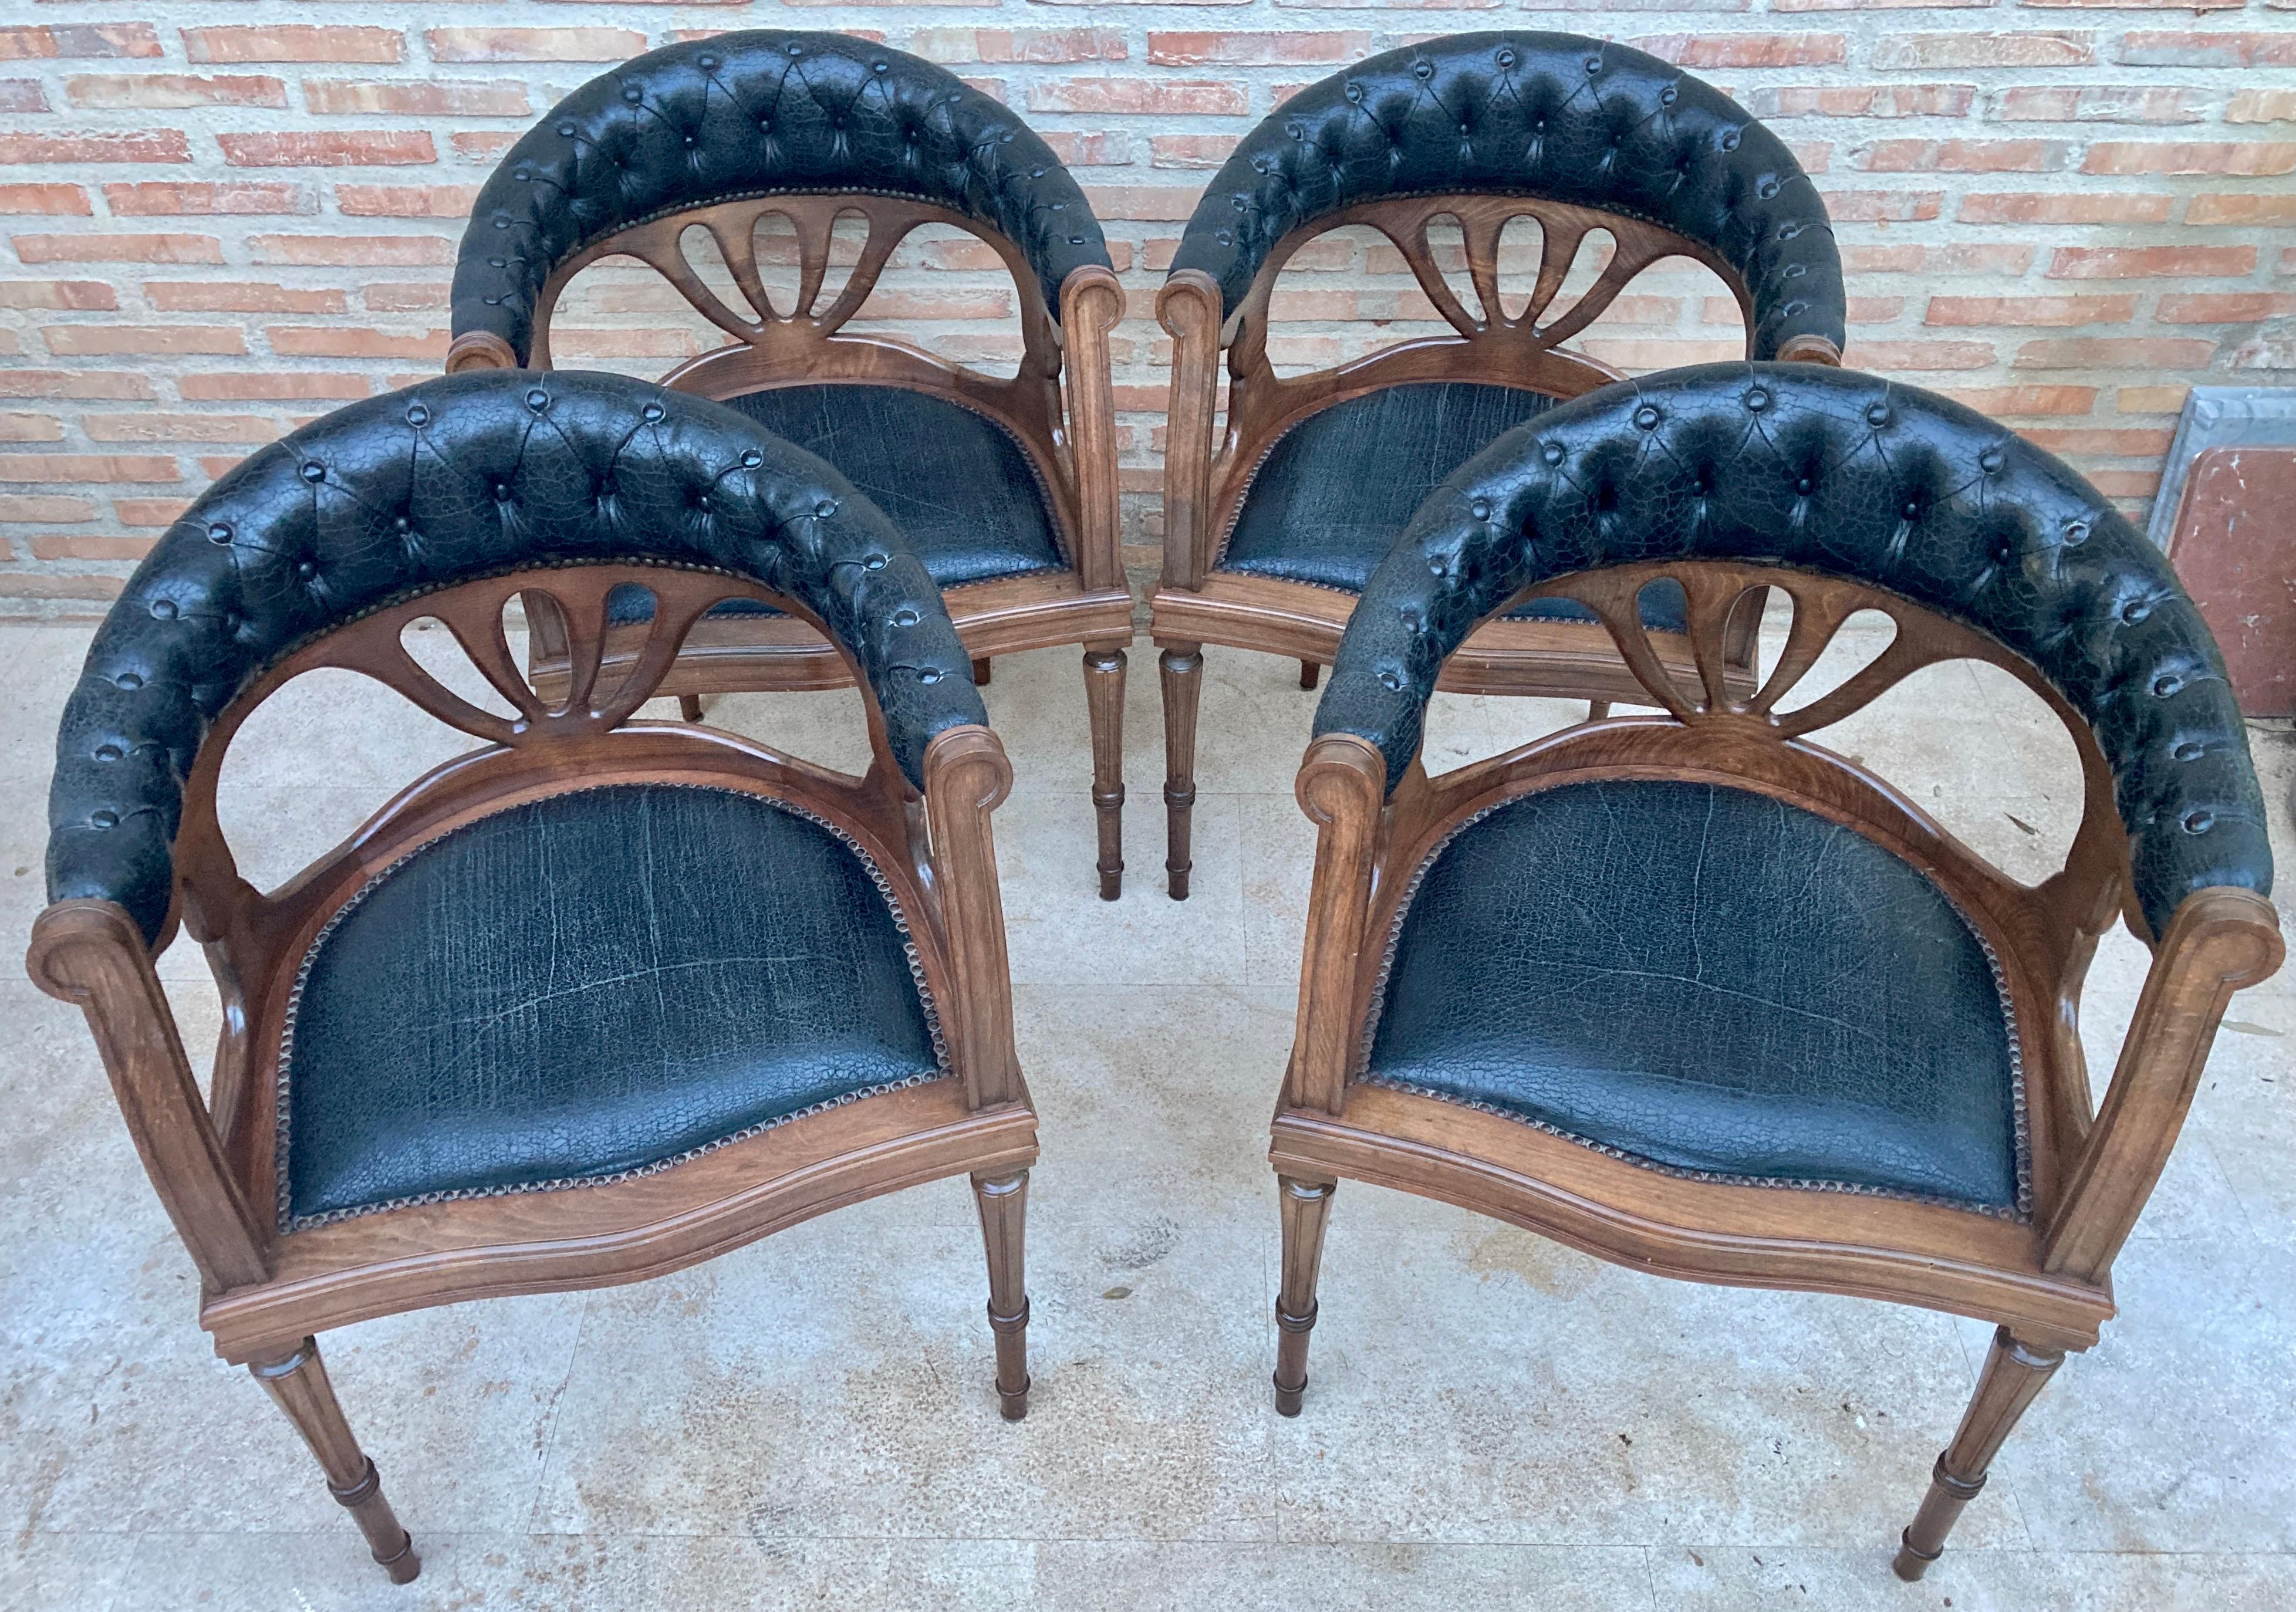 Ensemble de 4 fauteuils en bois de noyer et assise en cuir vintage. Vers les années 1950. 
La caractéristique des chaises est qu'elles sont livrées avec leur revêtement en cuir noir d'origine, légèrement usé par l'usage, mais bien conservé.